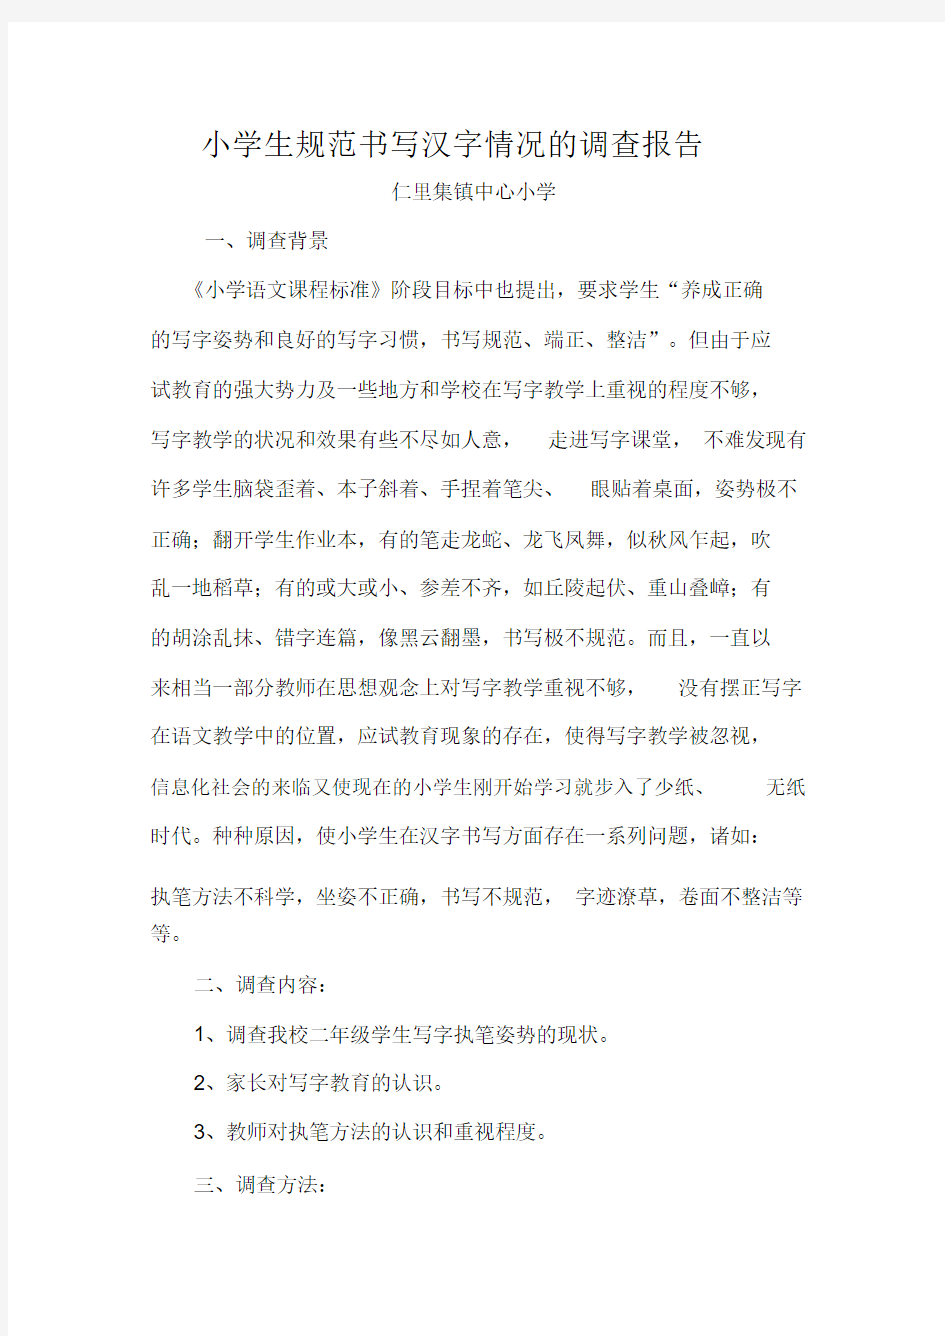 小学生汉字书写情况的调查报告[1]